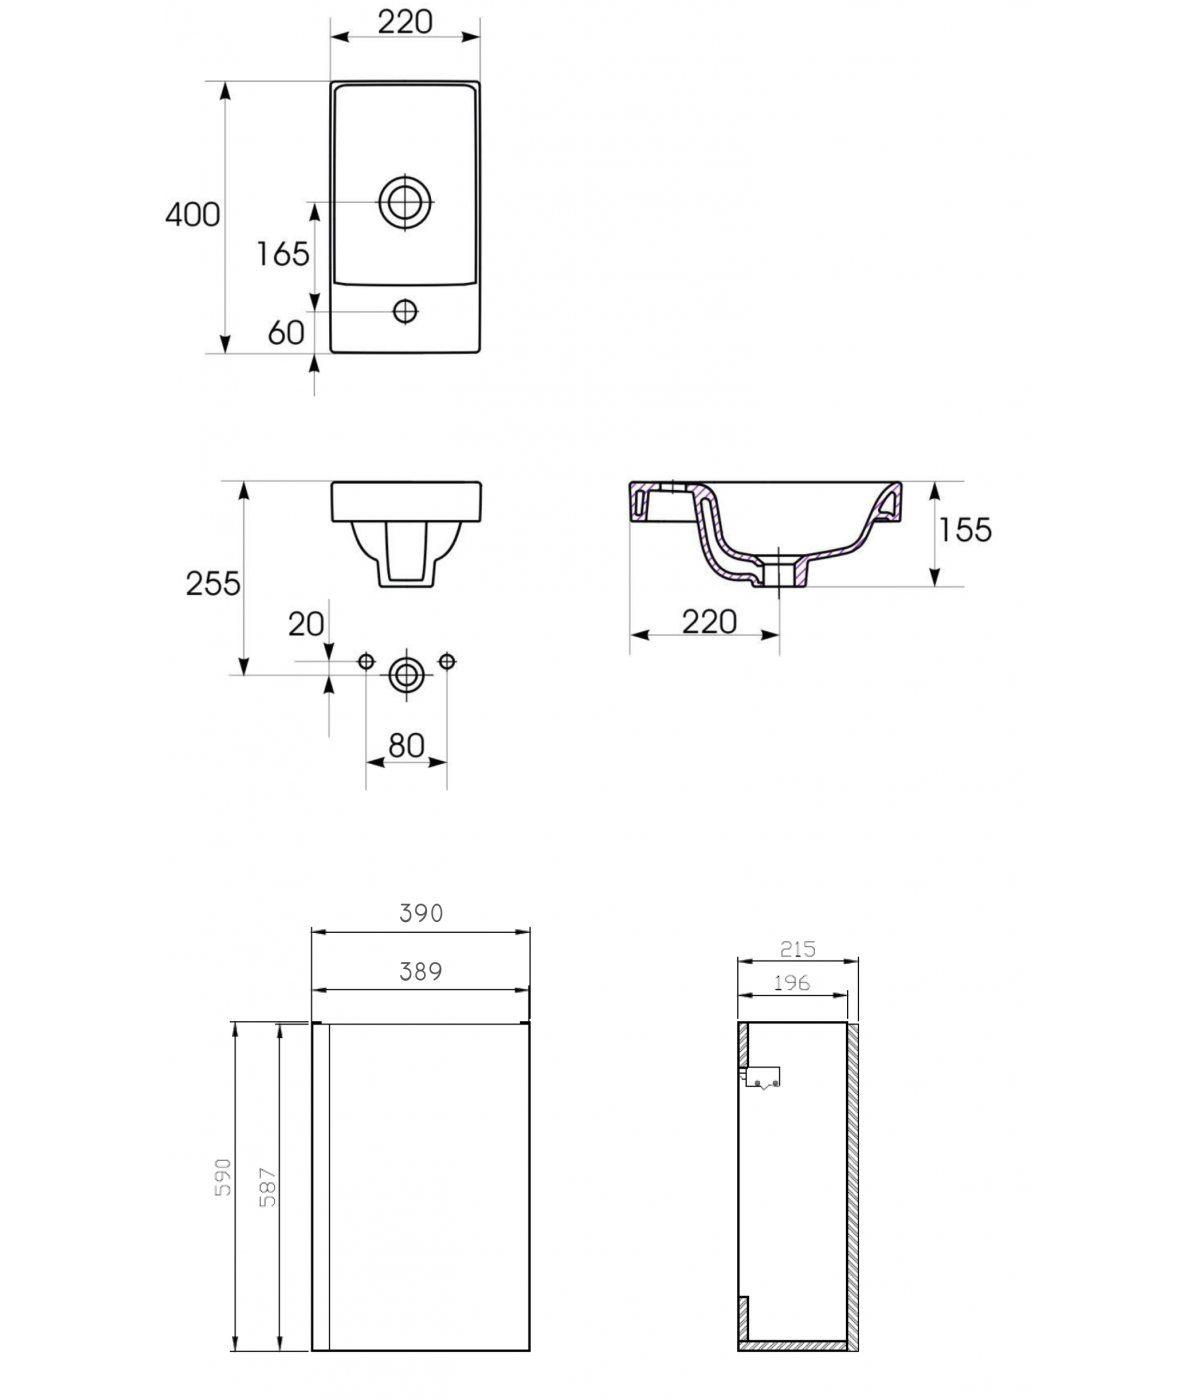 Badmöbel Set MODUO 40 Waschbecken-Unterschrank mit Waschbecken, Grau